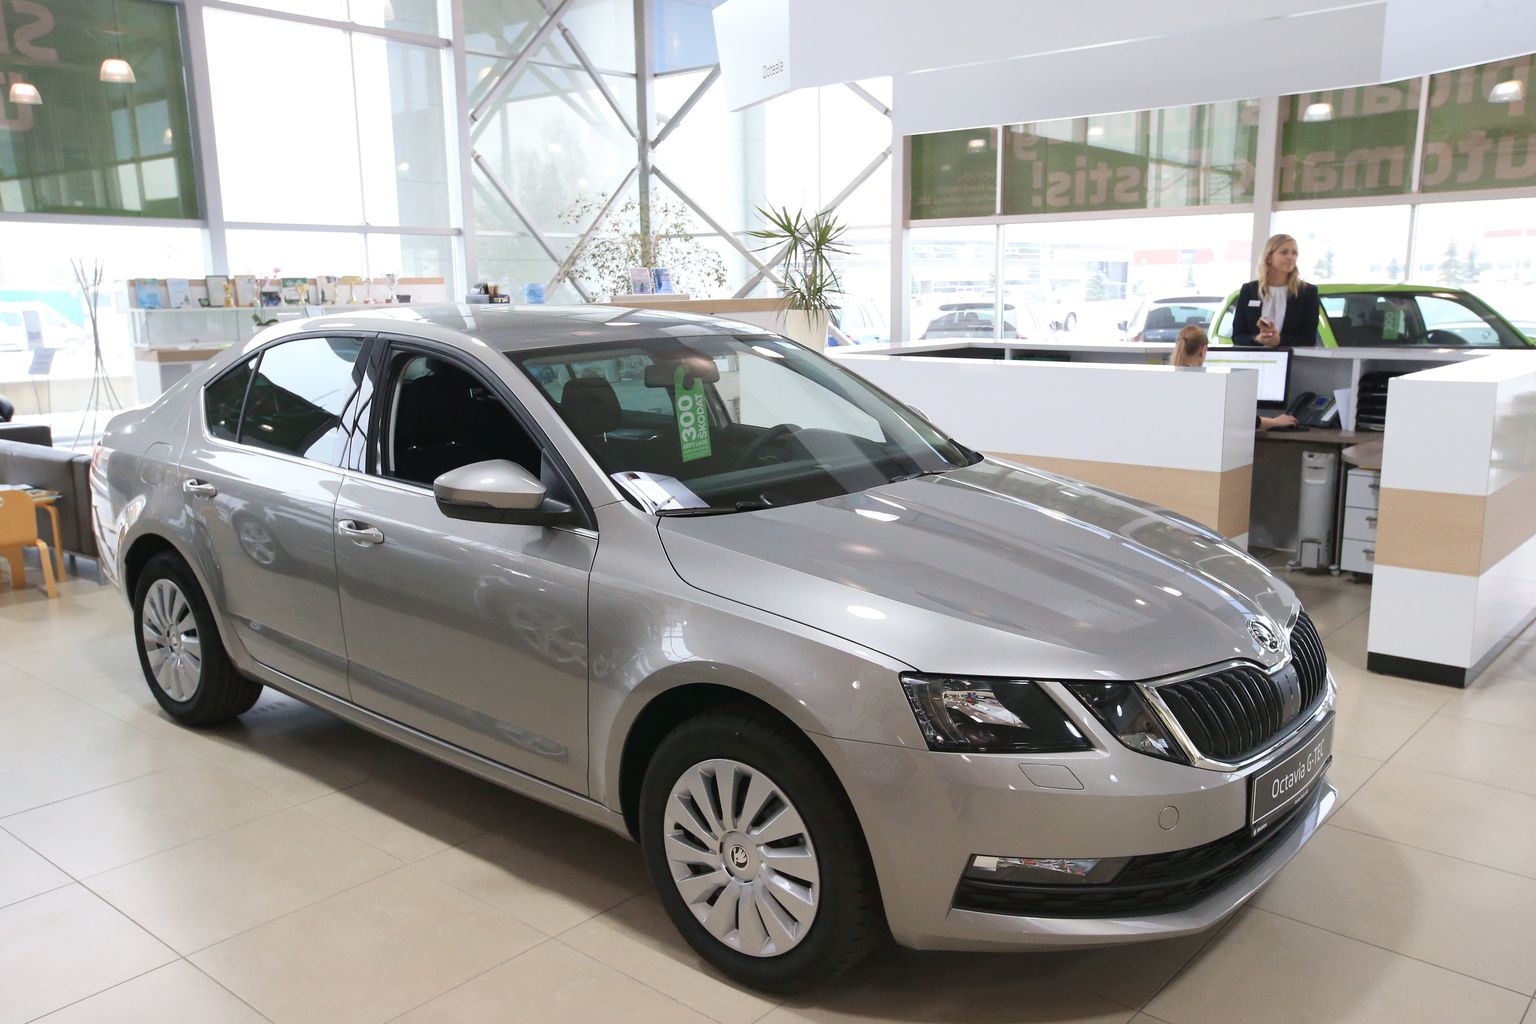 Škoda Octavia on jätkuvalt armastatuim mudel Eesti inimese seas.